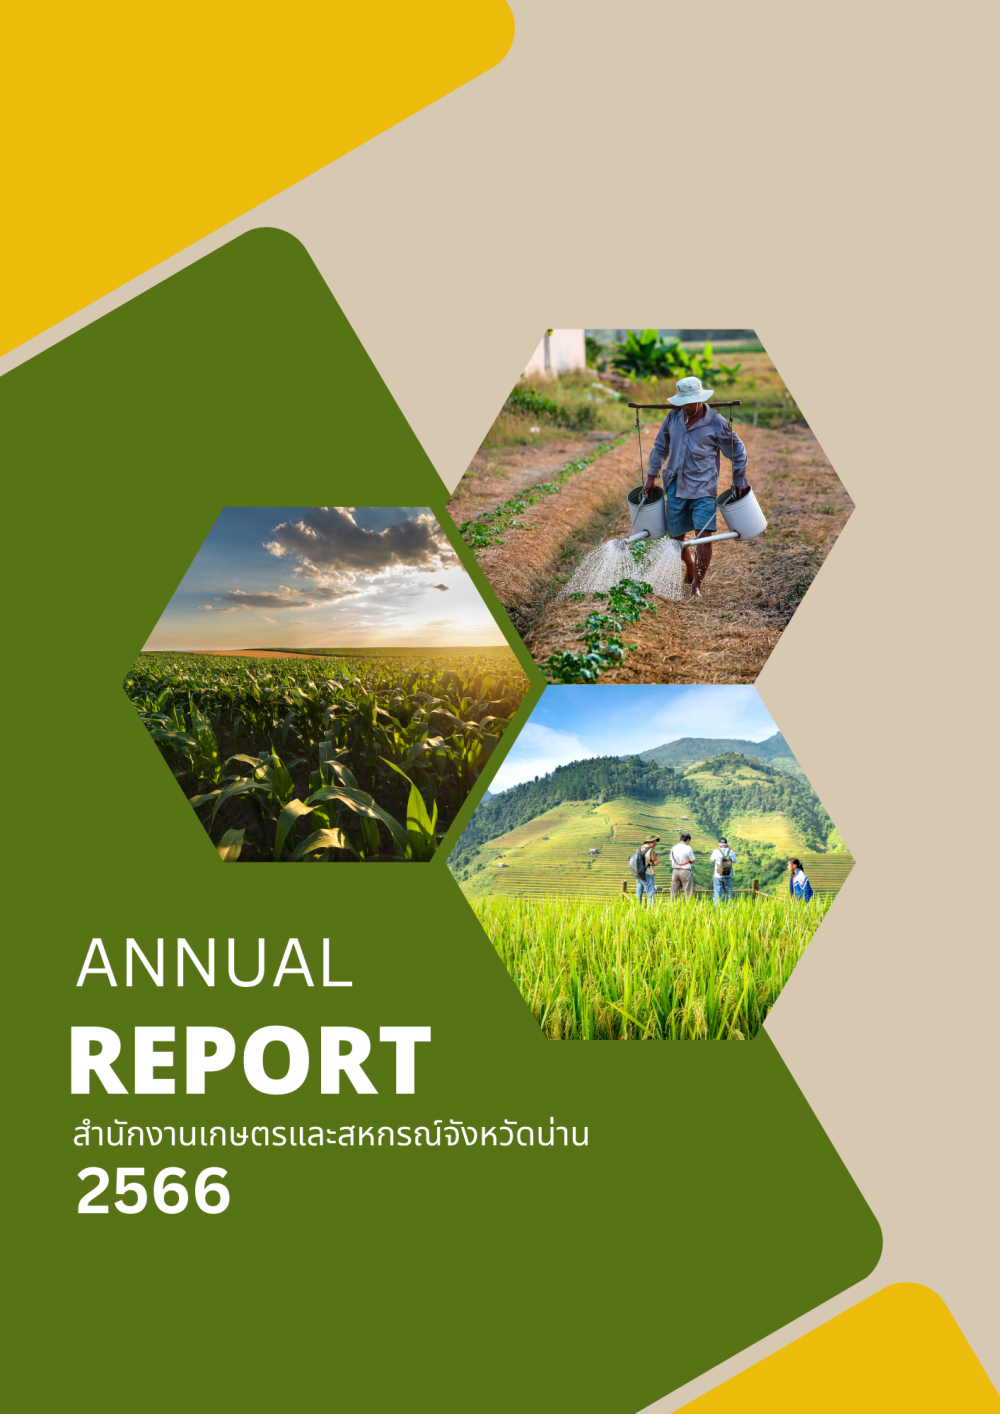 รายงานประจำปี 2566 สำนักงานเกษตรและสหกรณ์จังหวัดน่าน